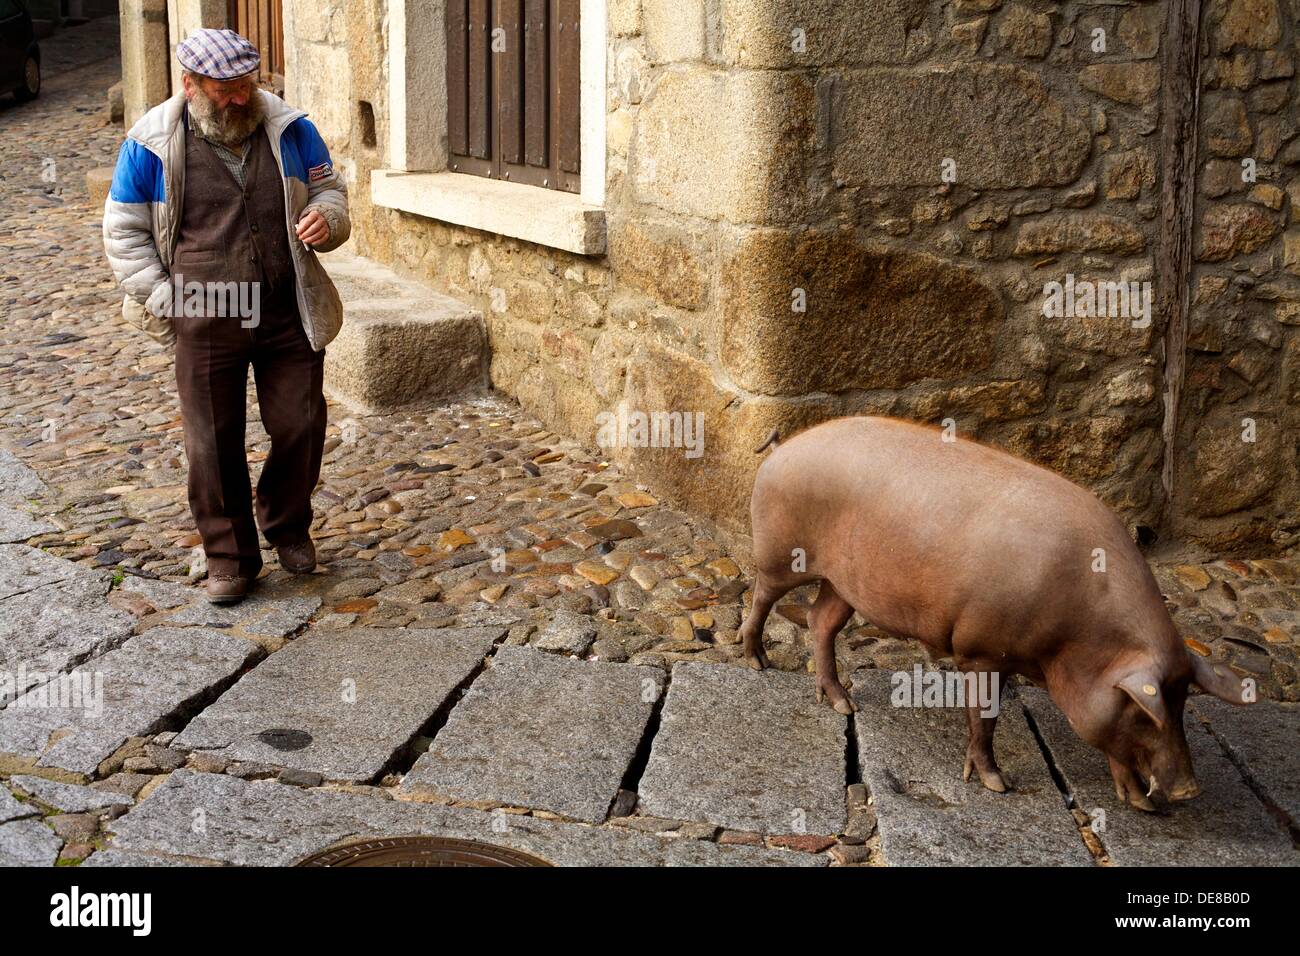 San Anton del cerdo (Marrano de San Antón) alimentadas por los vecinos de La Alberca, Salamanca, Castilla y León, España Foto de stock